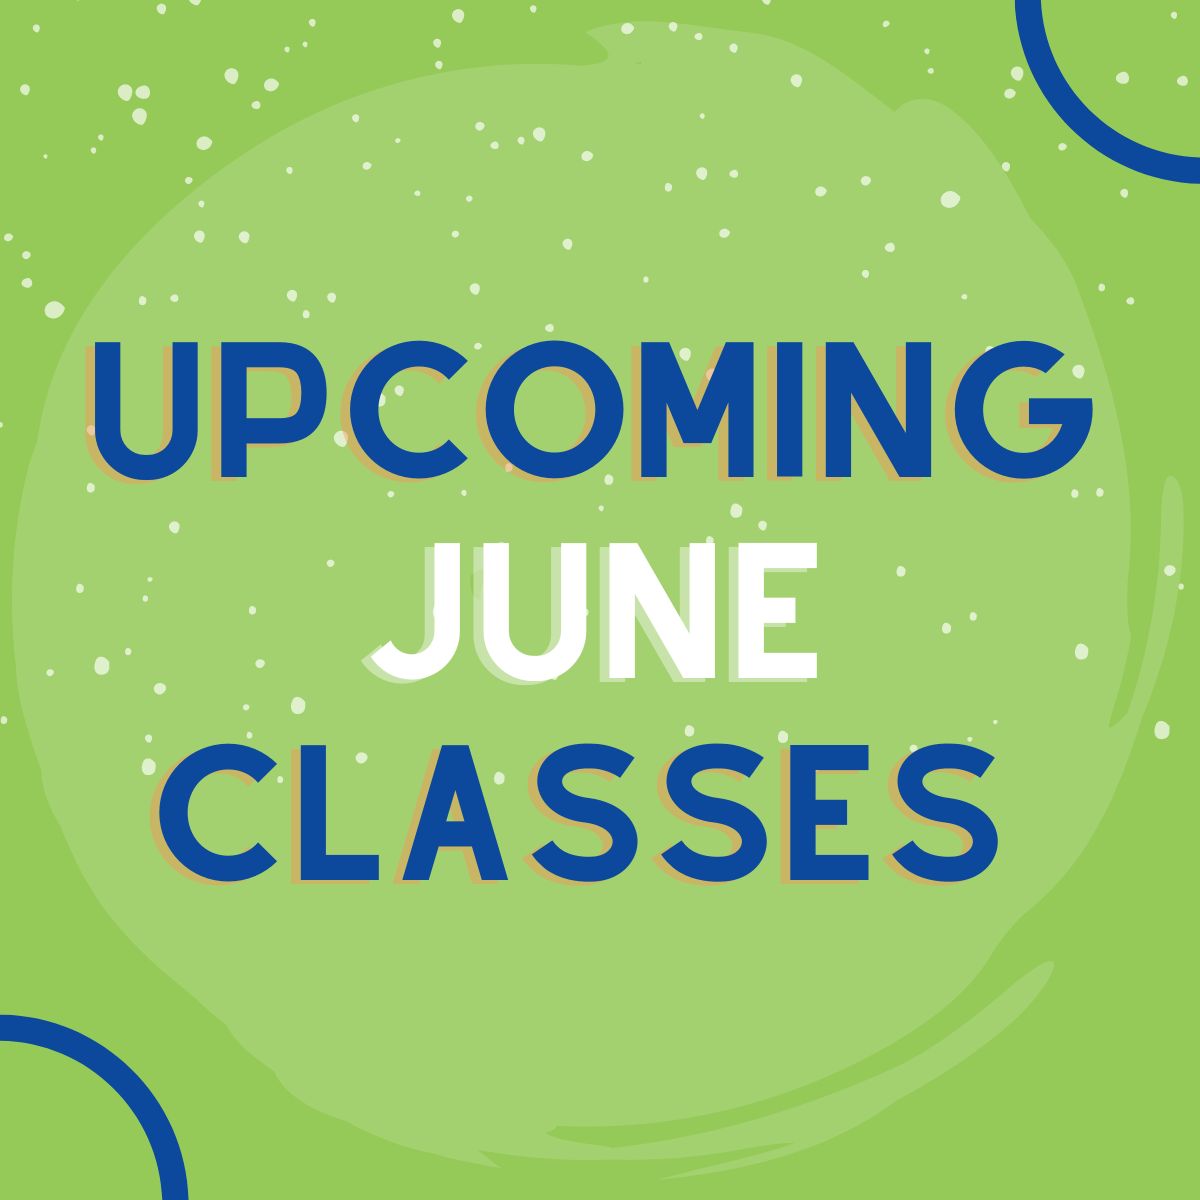 Upcoming June Classes